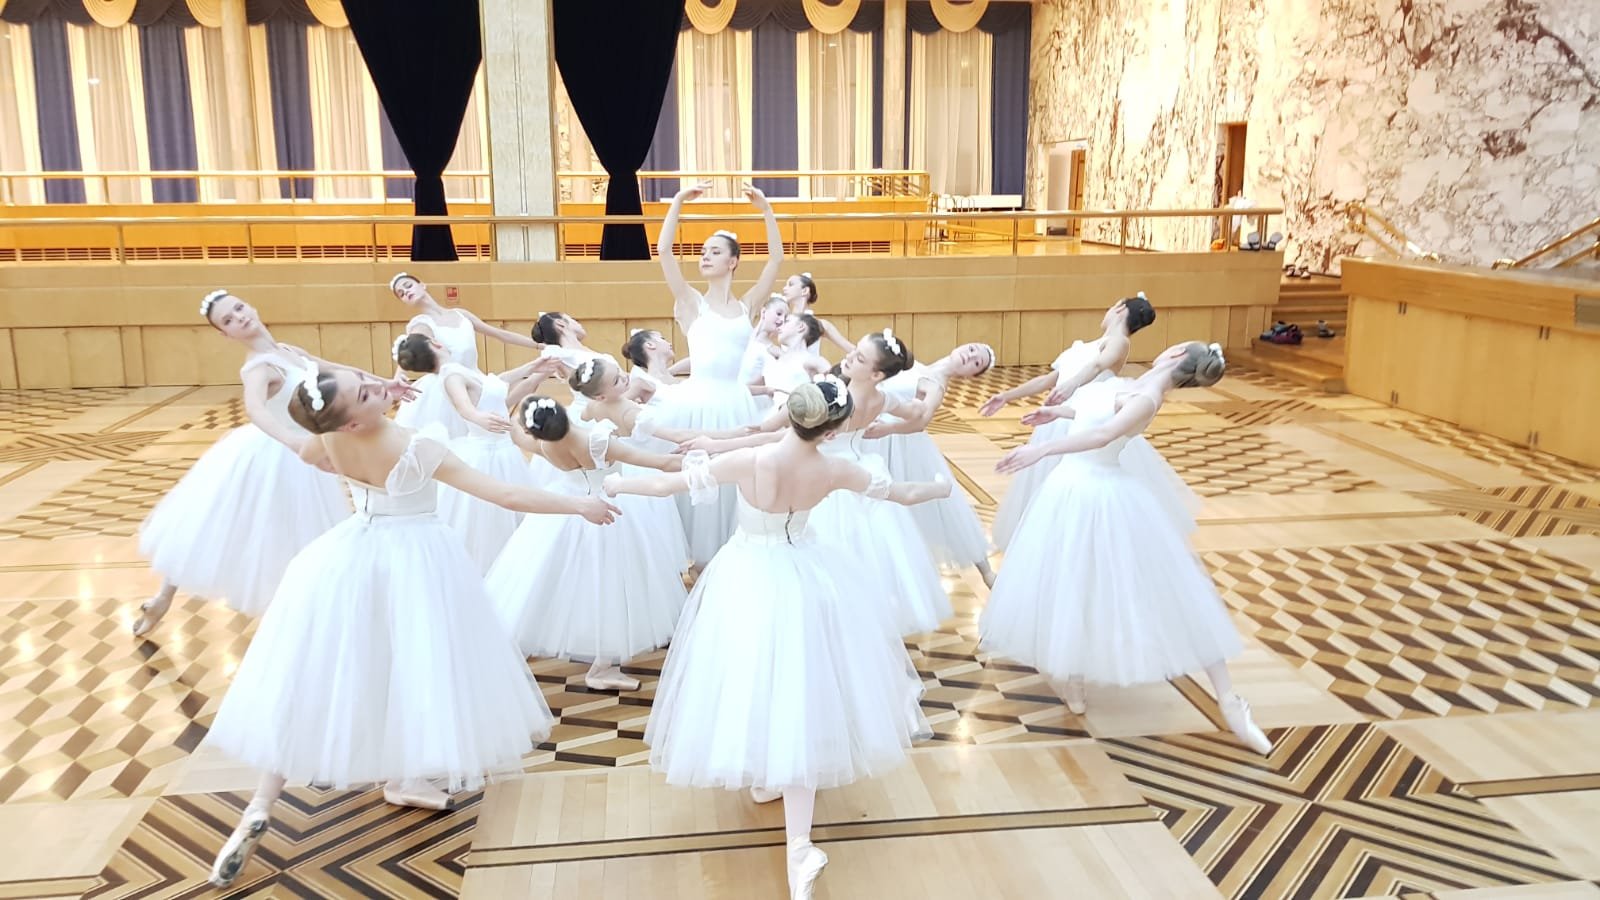 Четыре тысячи детей учатся хореографии в творческих образовательных учреждениях Москвы — Сергунина